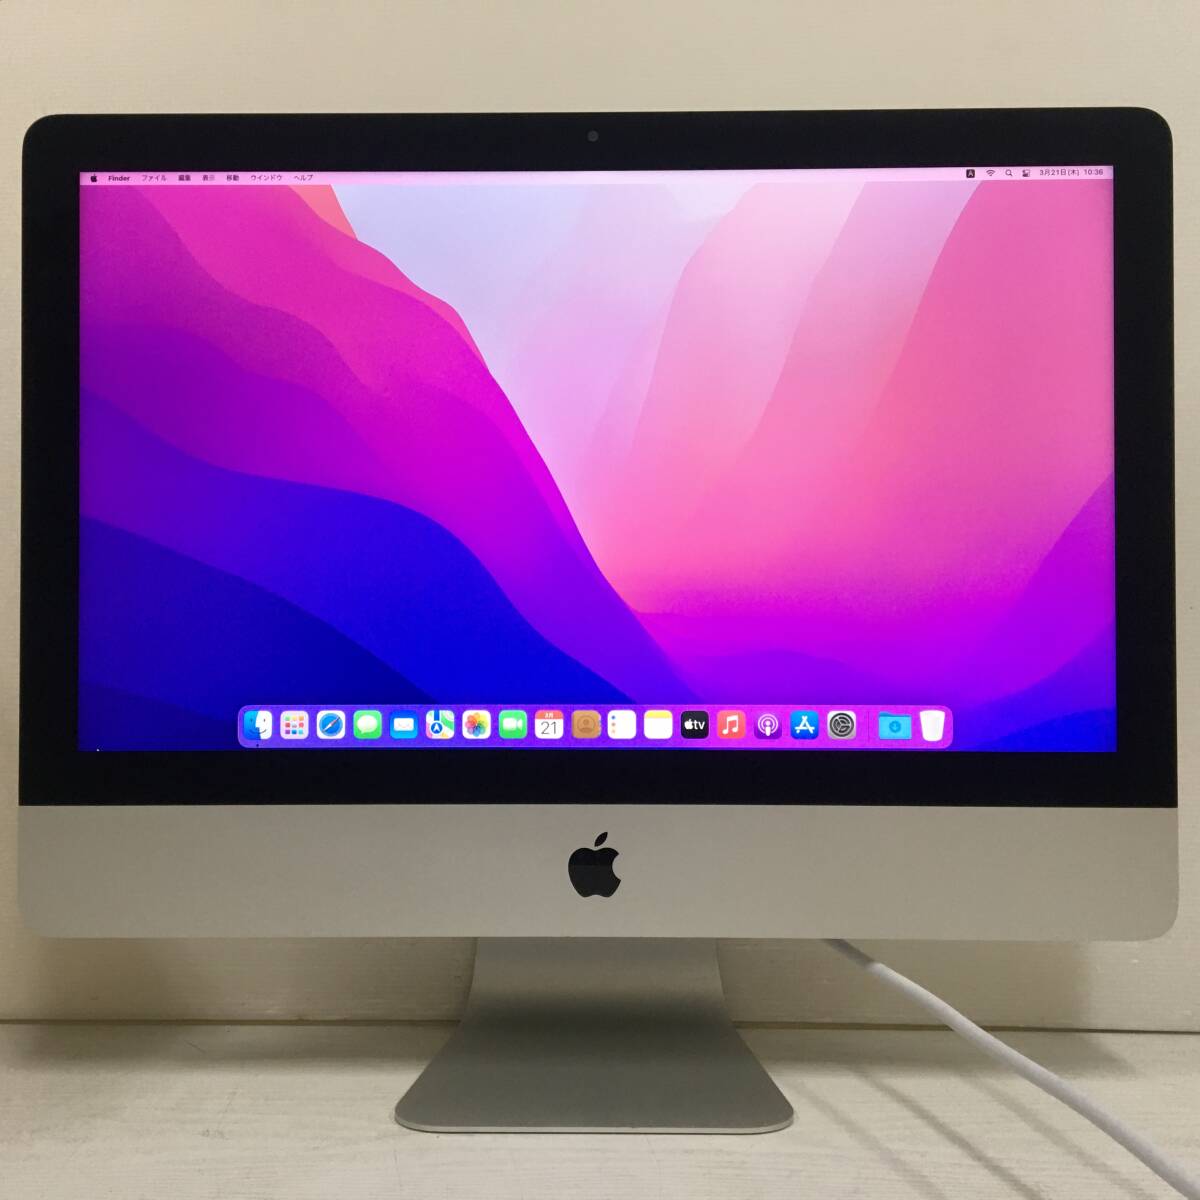 ☆【美品 21.5インチ】Apple iMac (21.5-inch, Late 2015) A1418 Core i5(5575R)/2.8GHz RAM:8GB/HDD:1TB Monterey ケーブル付属 動作品_画像2